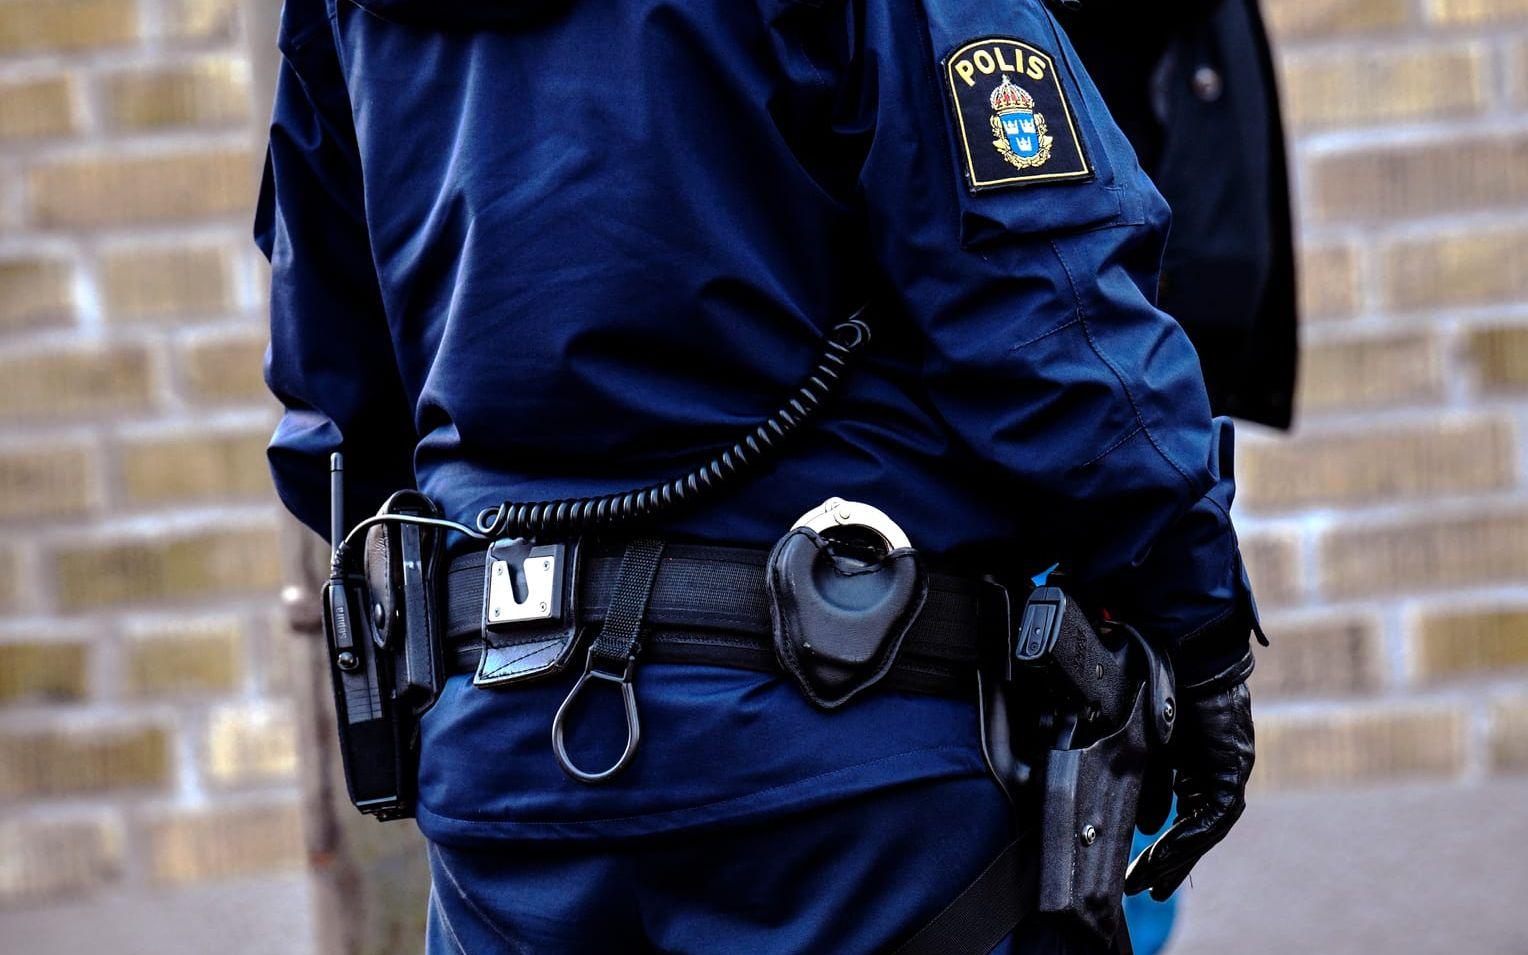 Personen hittades vid en busskur i närheten av Borås. Polisen har spärrat av platsen för teknisk undersökning. Bild: TT/Arkiv